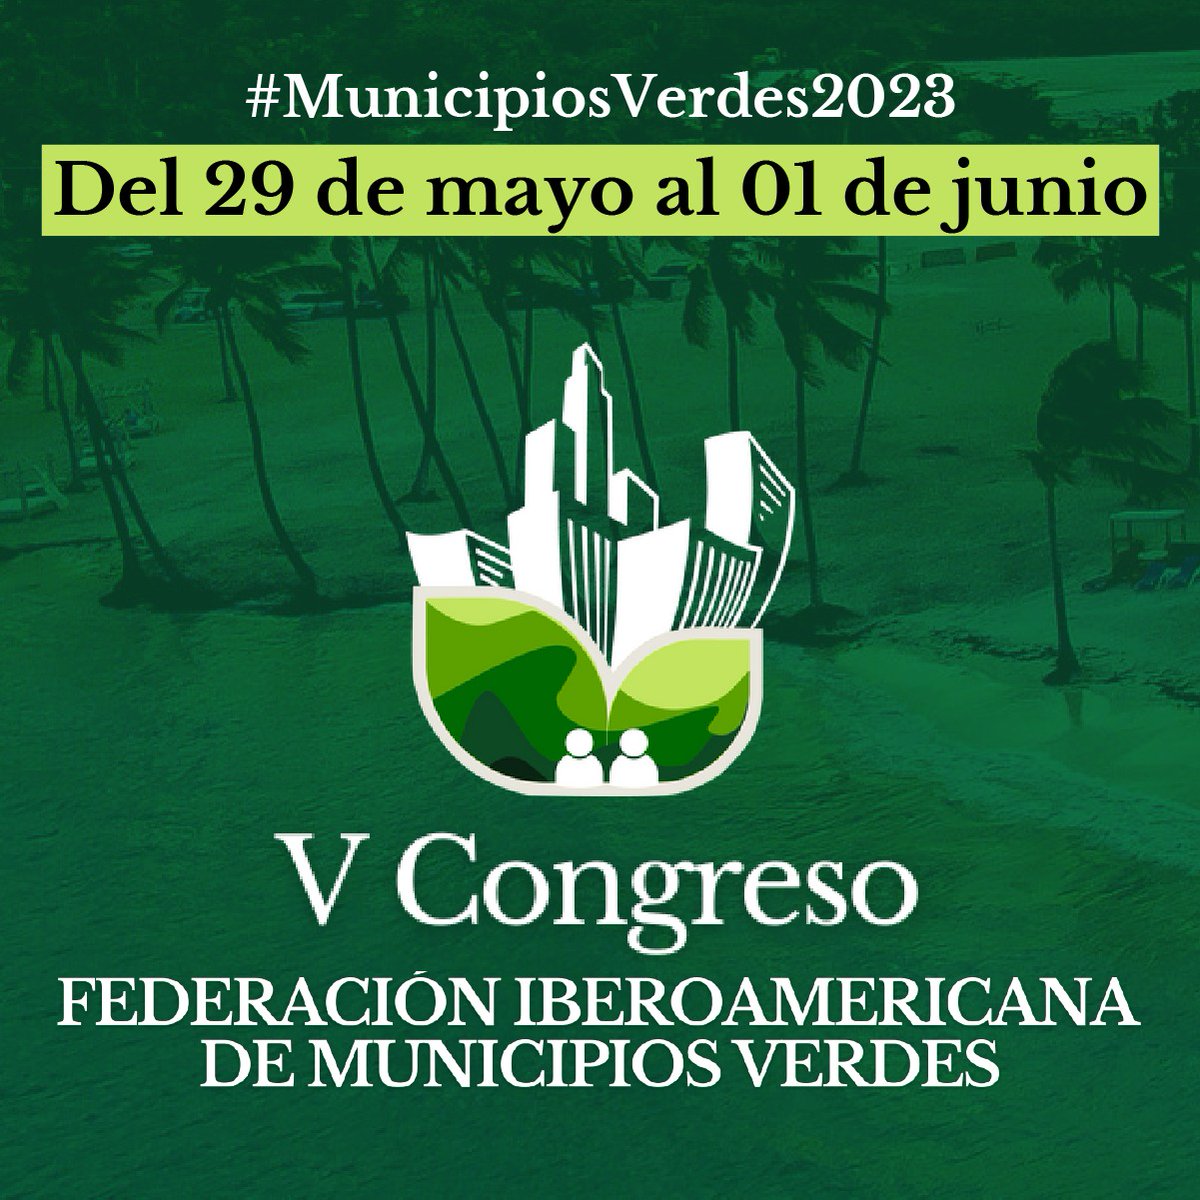 Socializar experiencias y evaluar resultados de los programas que desarrollan #MunicipiosVerdes2023 son parte de los objetivos del V Congreso de @fedodimrdofi